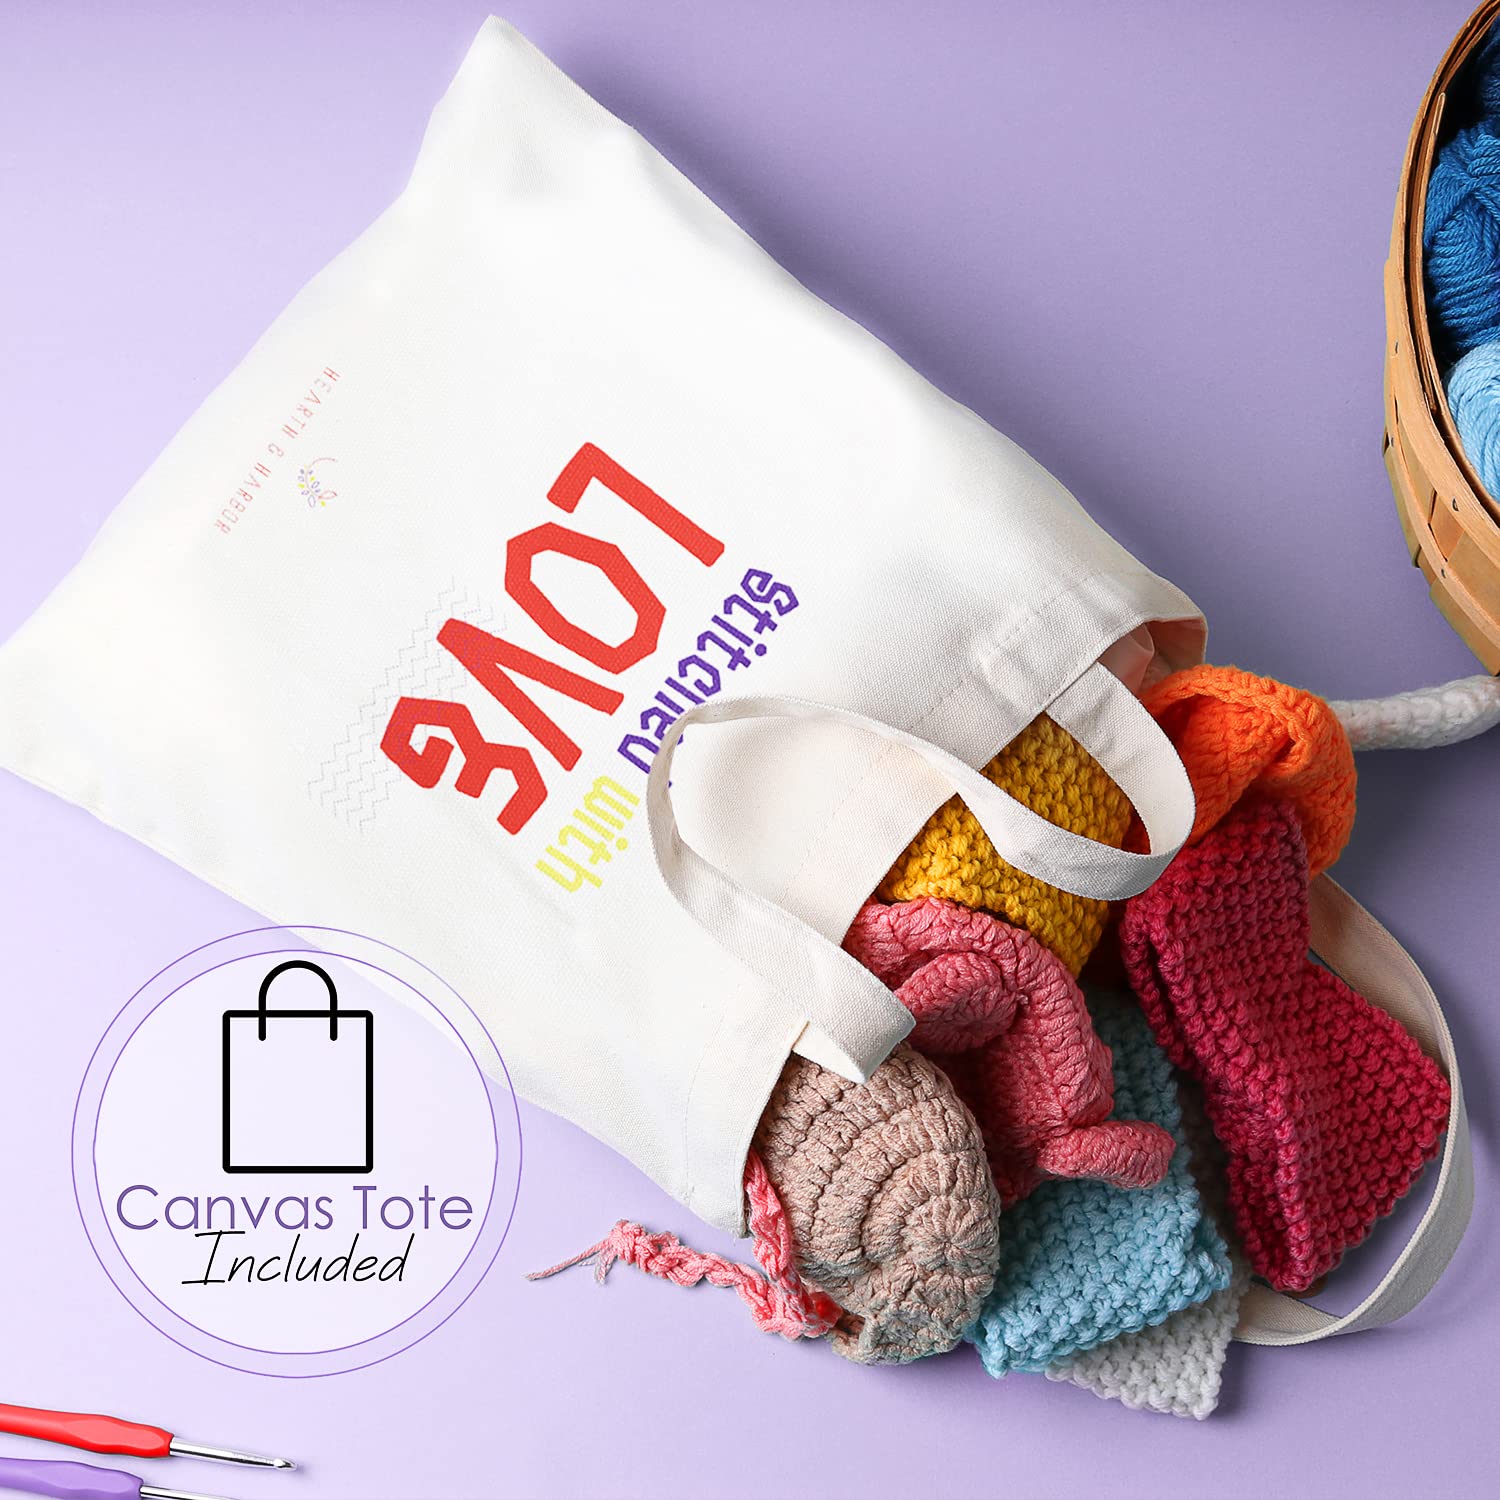 Crochet Kit for Beginners Adults – Beginner Crochet Kit for Adults and Kids, Learn to Crochet Kits for Adults Beginner and Professionals – 73 Piece Crochet Set with Crochet Yarn and Crochet Hook Set